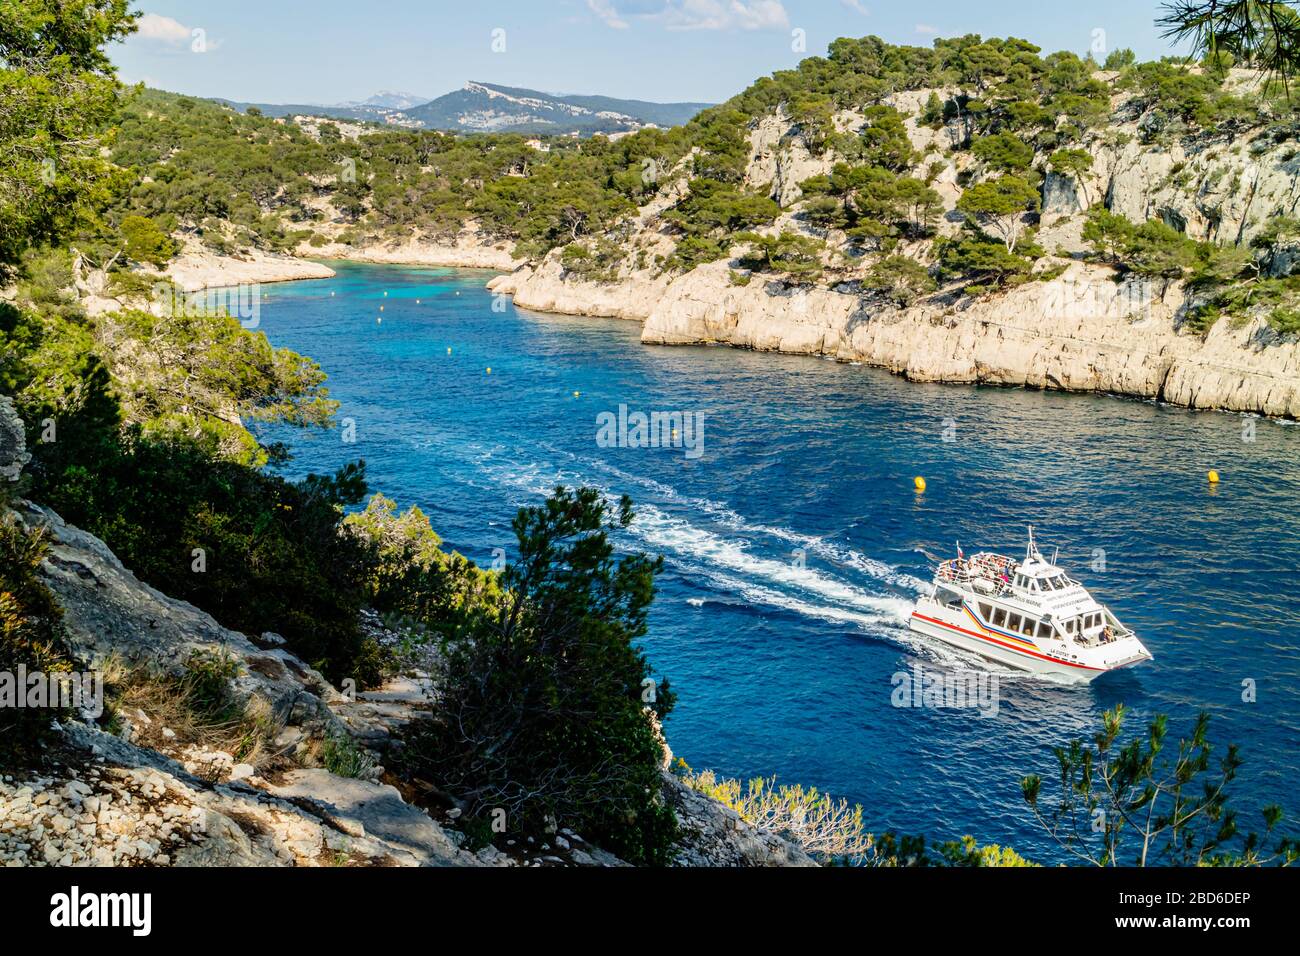 Vue sur la Calanque de Port PIN avec un bateau touristique, Parc National de Calanques, près de Cassis, côte sud de la France. Printemps 2017. Banque D'Images